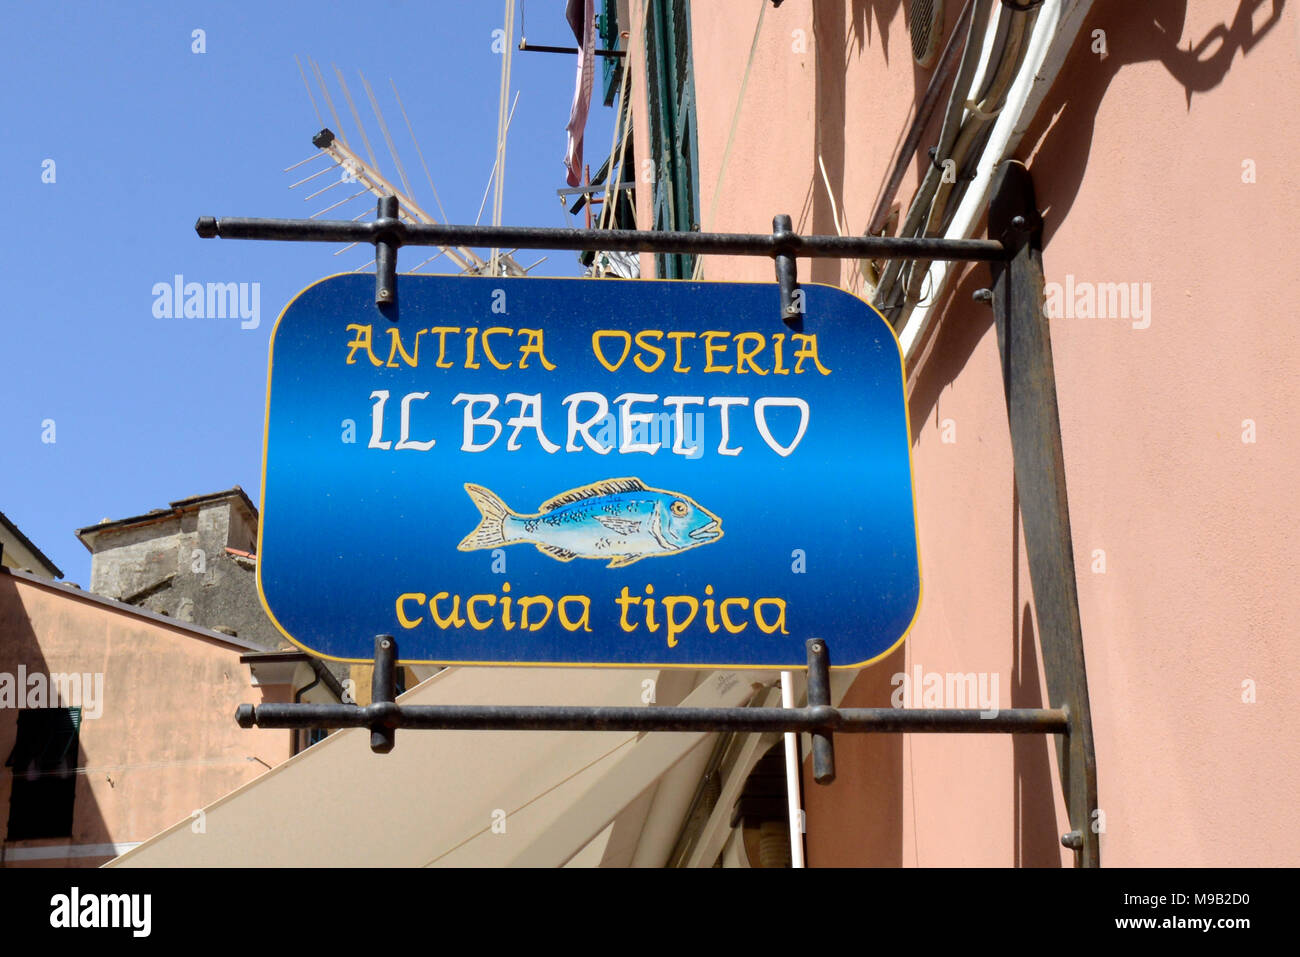 Sign of antica osteria restaurant, Vernazza, Cinque Terre, Cinqueterre, Ligury, Italy Stock Photo